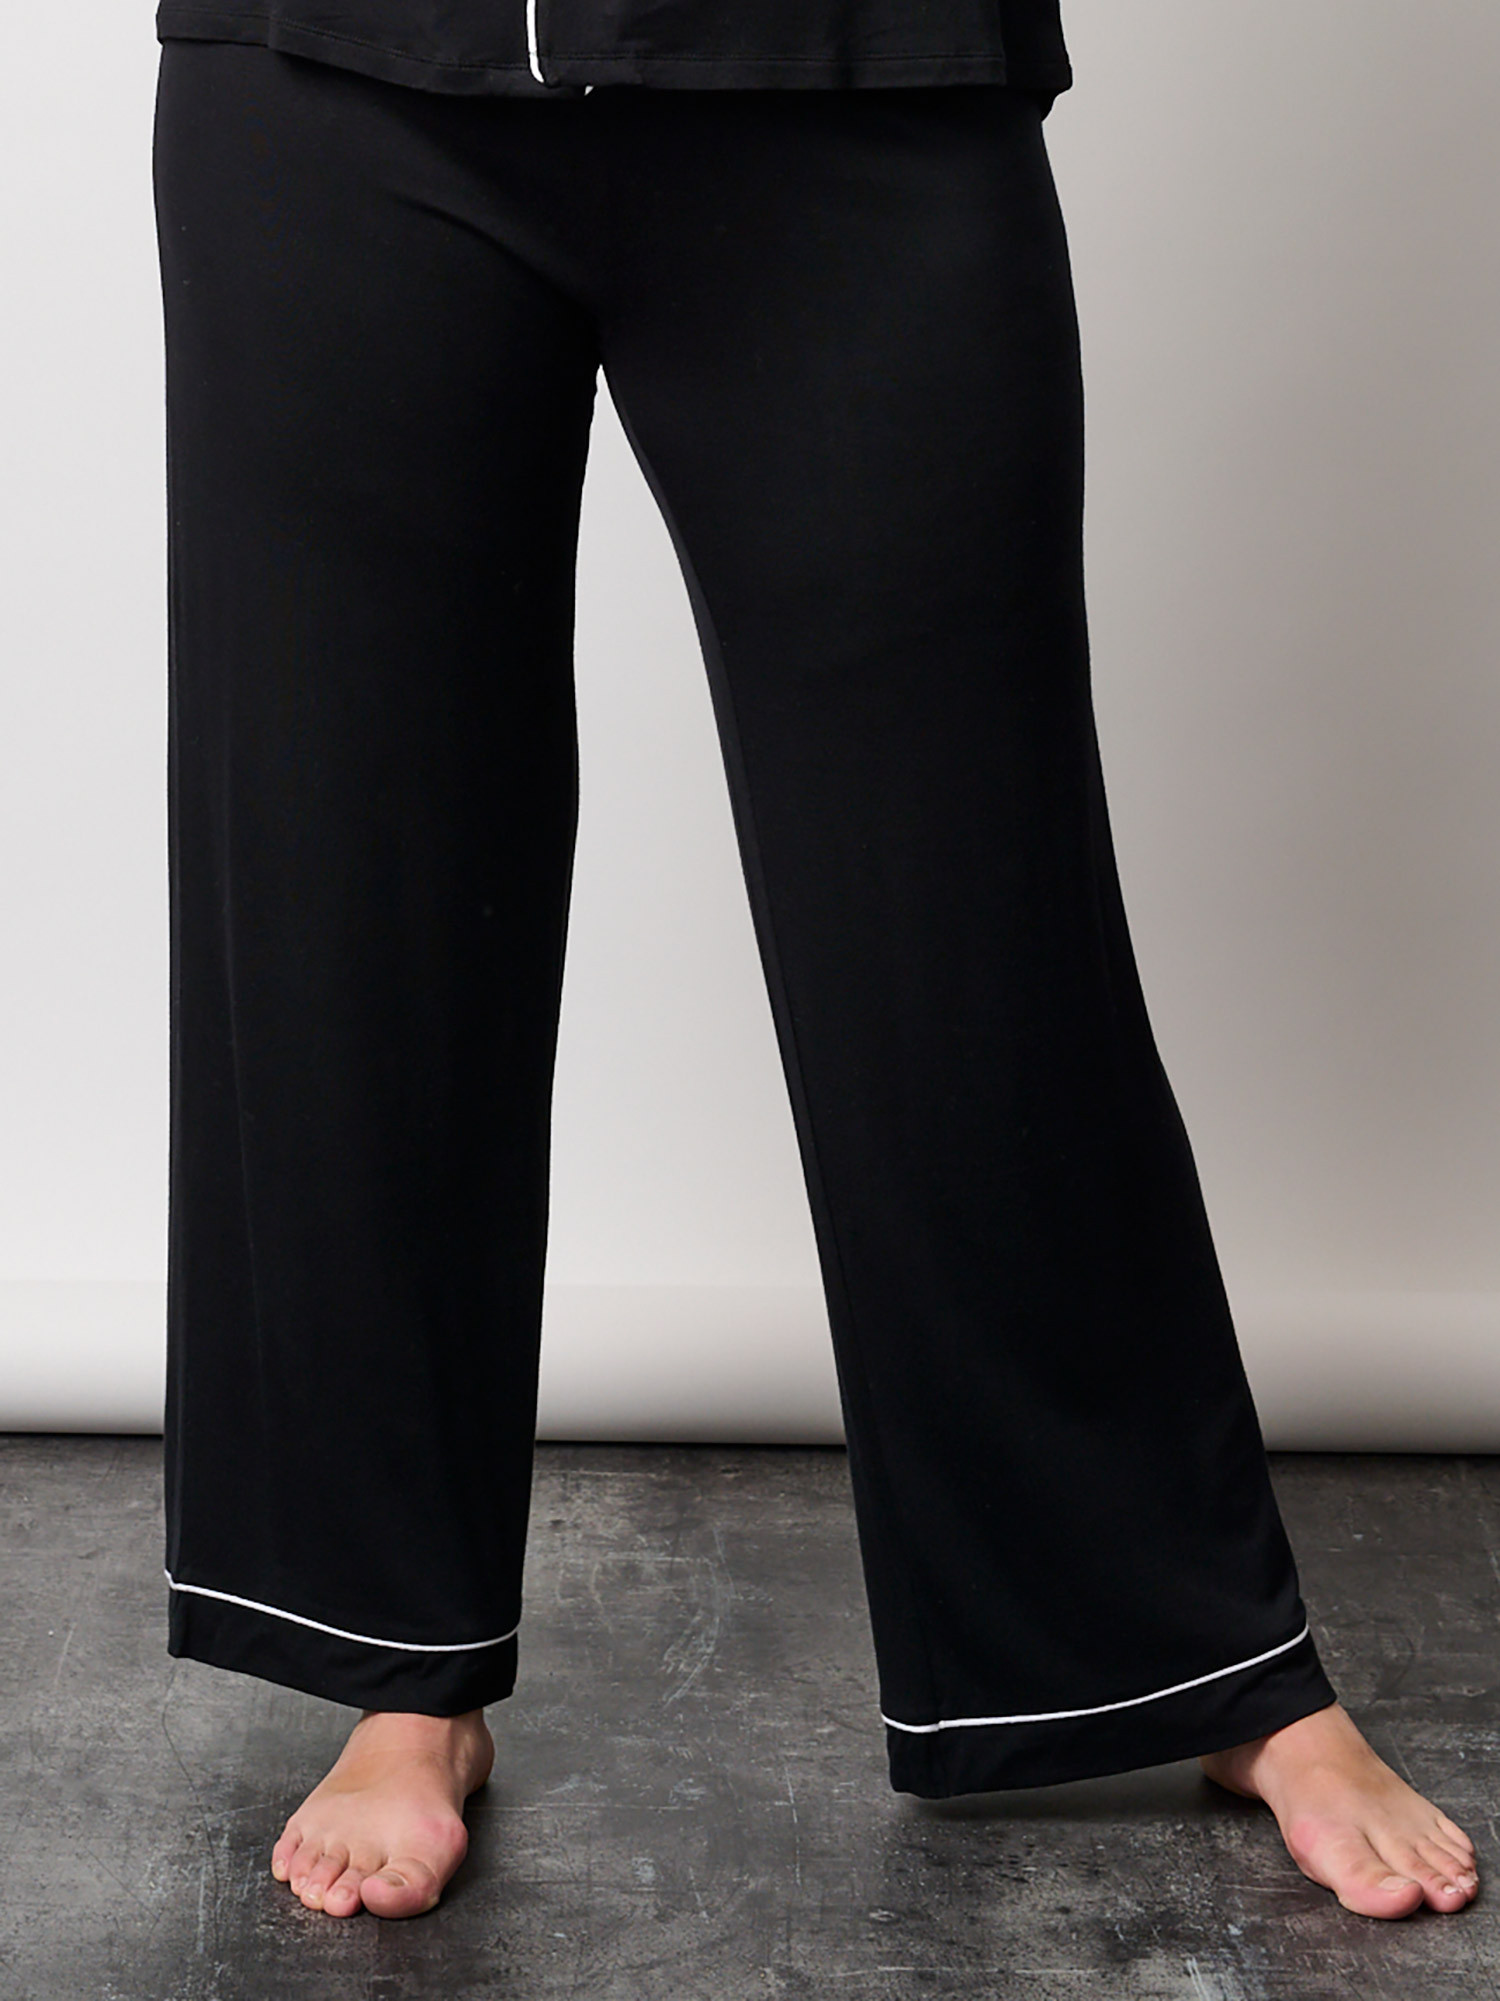 TULLE - Svarte pysjamasbukser med hvite prikker